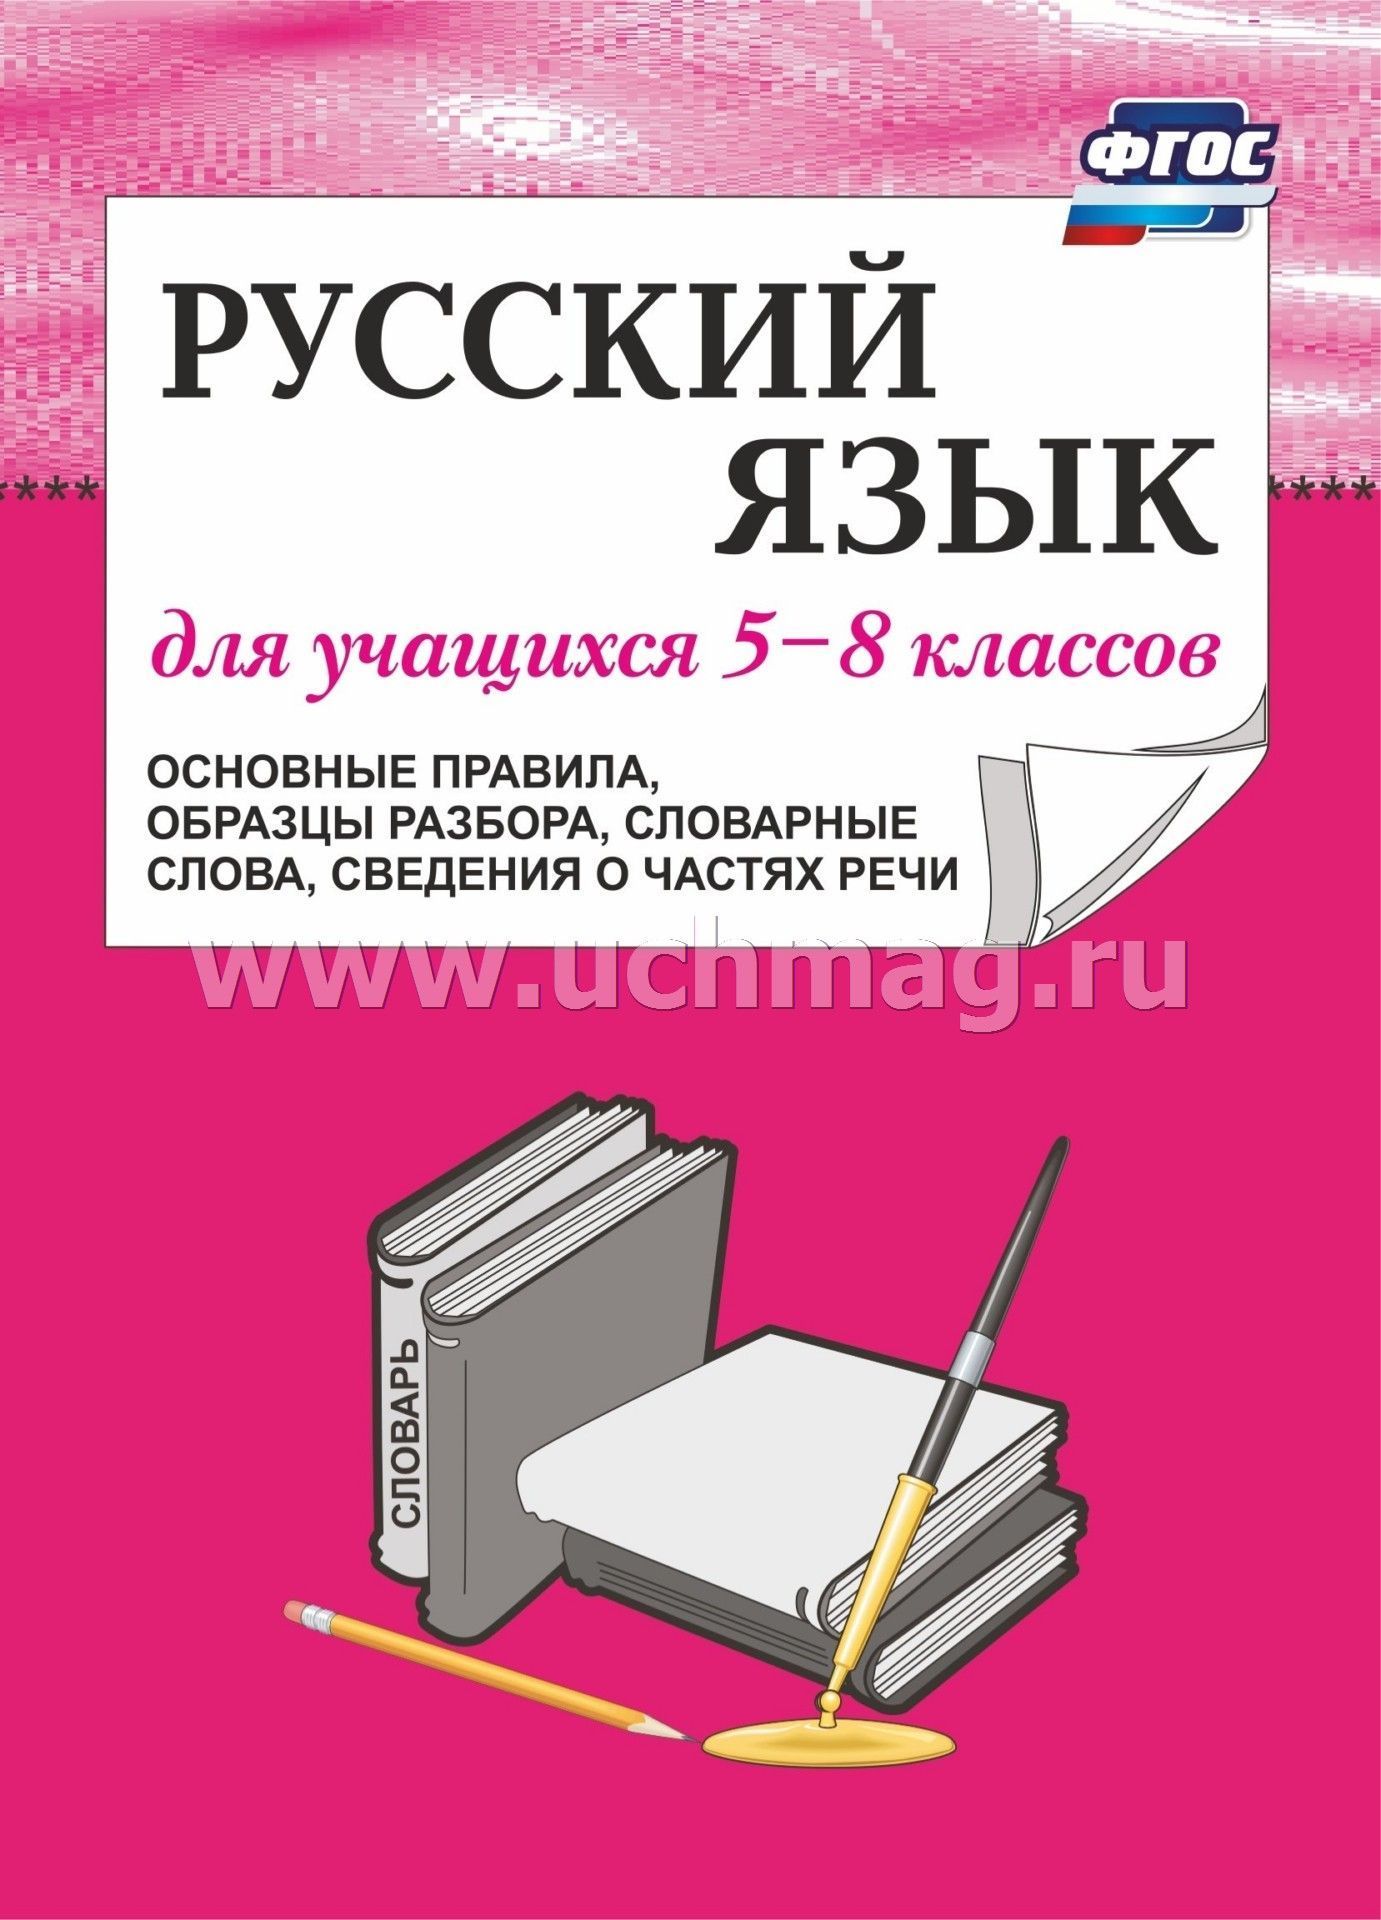 8 класс русский 8 вид тематическое планирование